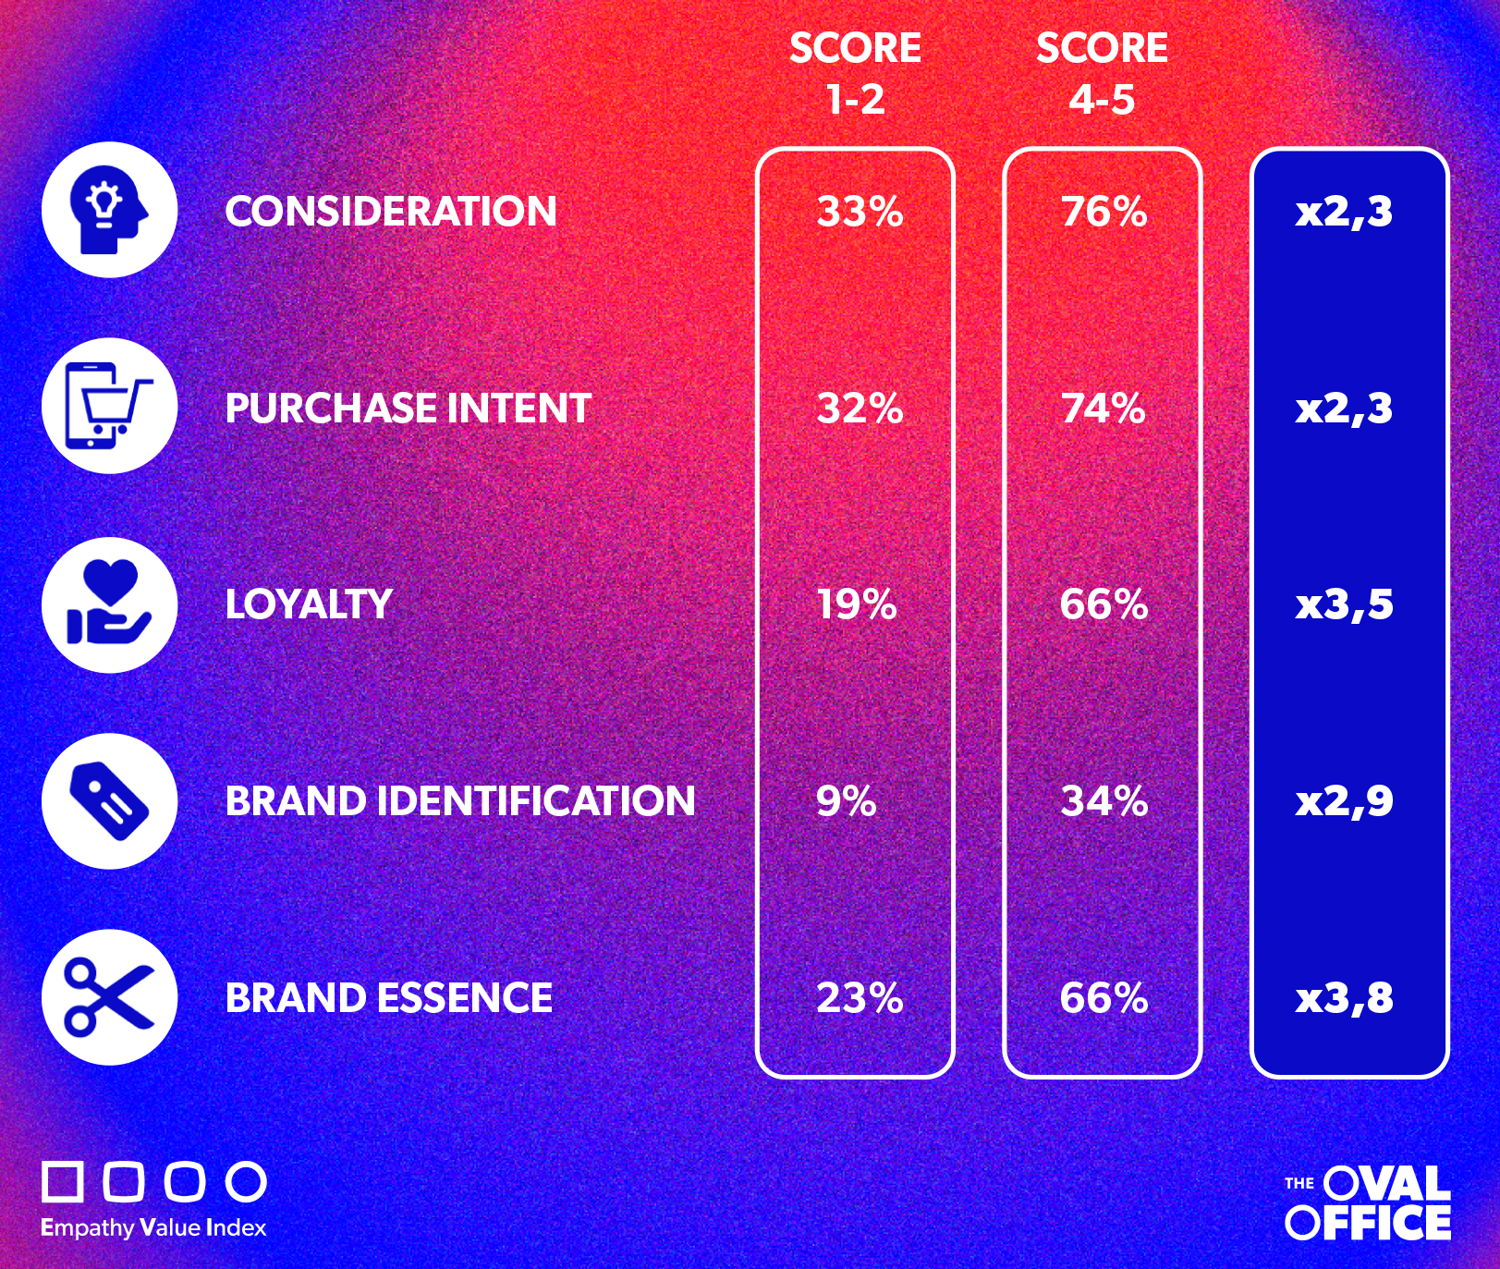 Dit schema geeft de relatie weer tussen merkempathie en marketing KPI's. Hoe hoger de EVI score, hoe groter de kans dat consumenten een merk overwegen/kopen/loyaal blijven aan het merk. 